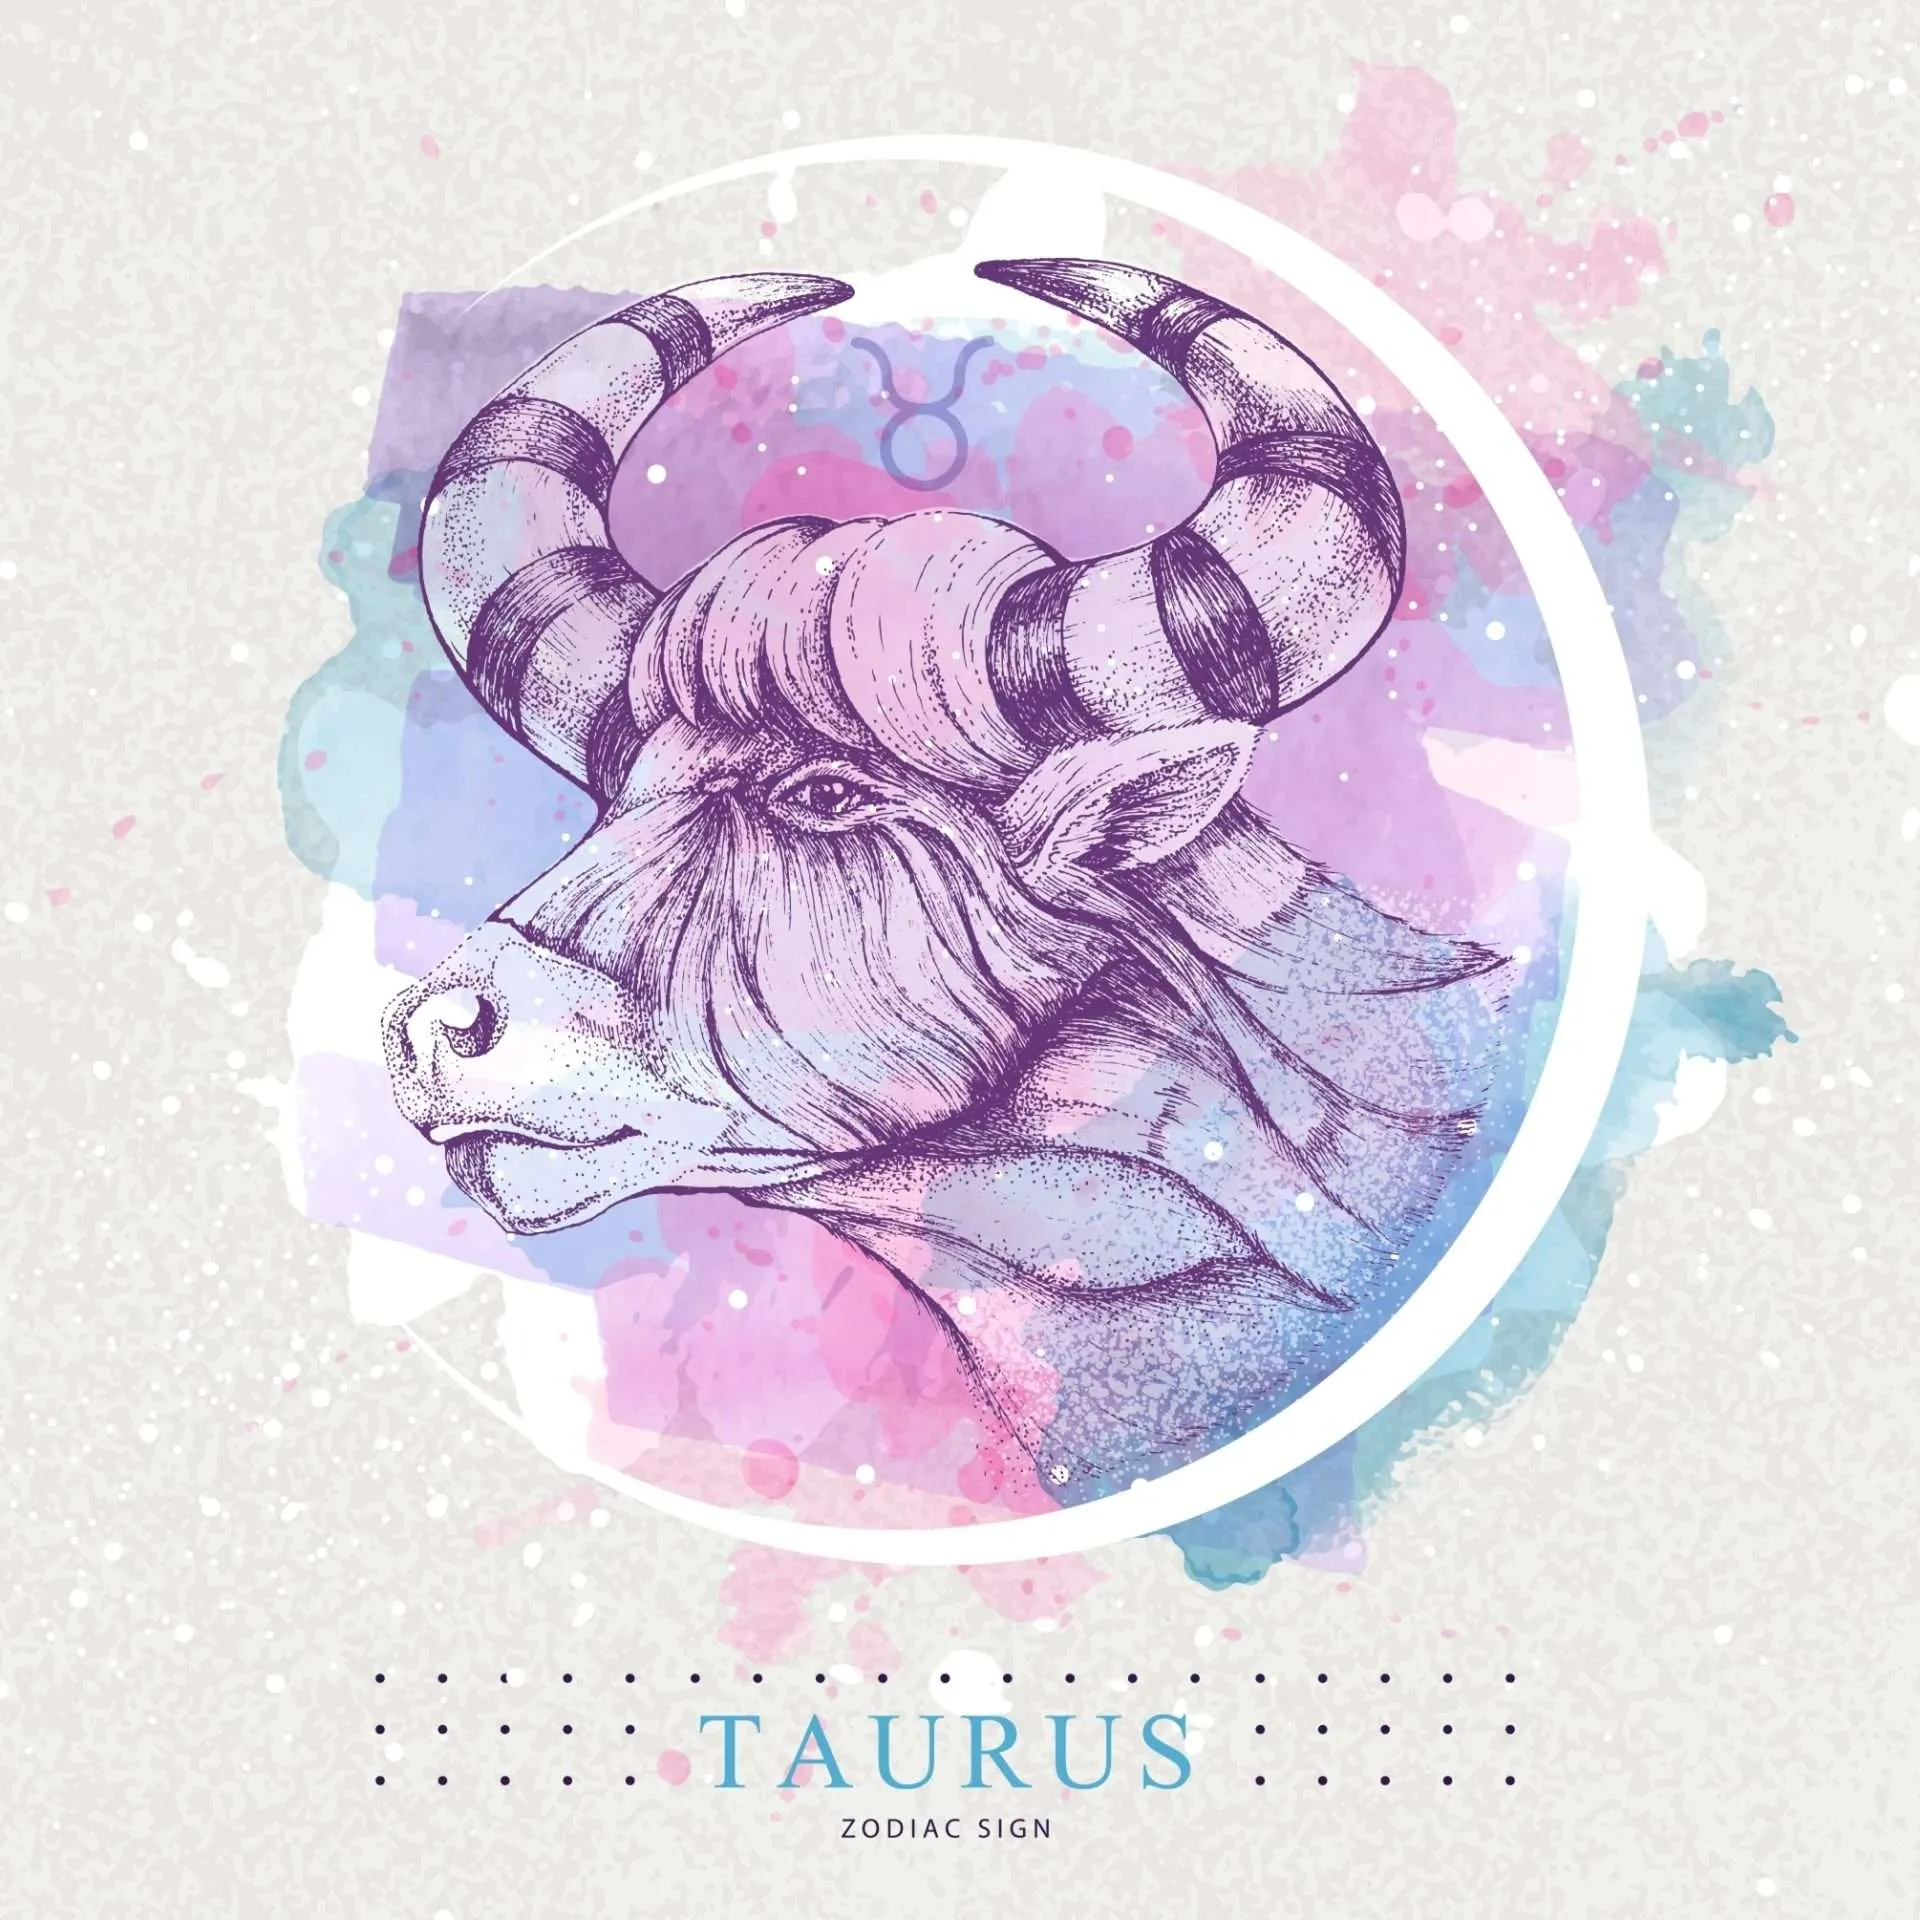 Taurus Signature Sign